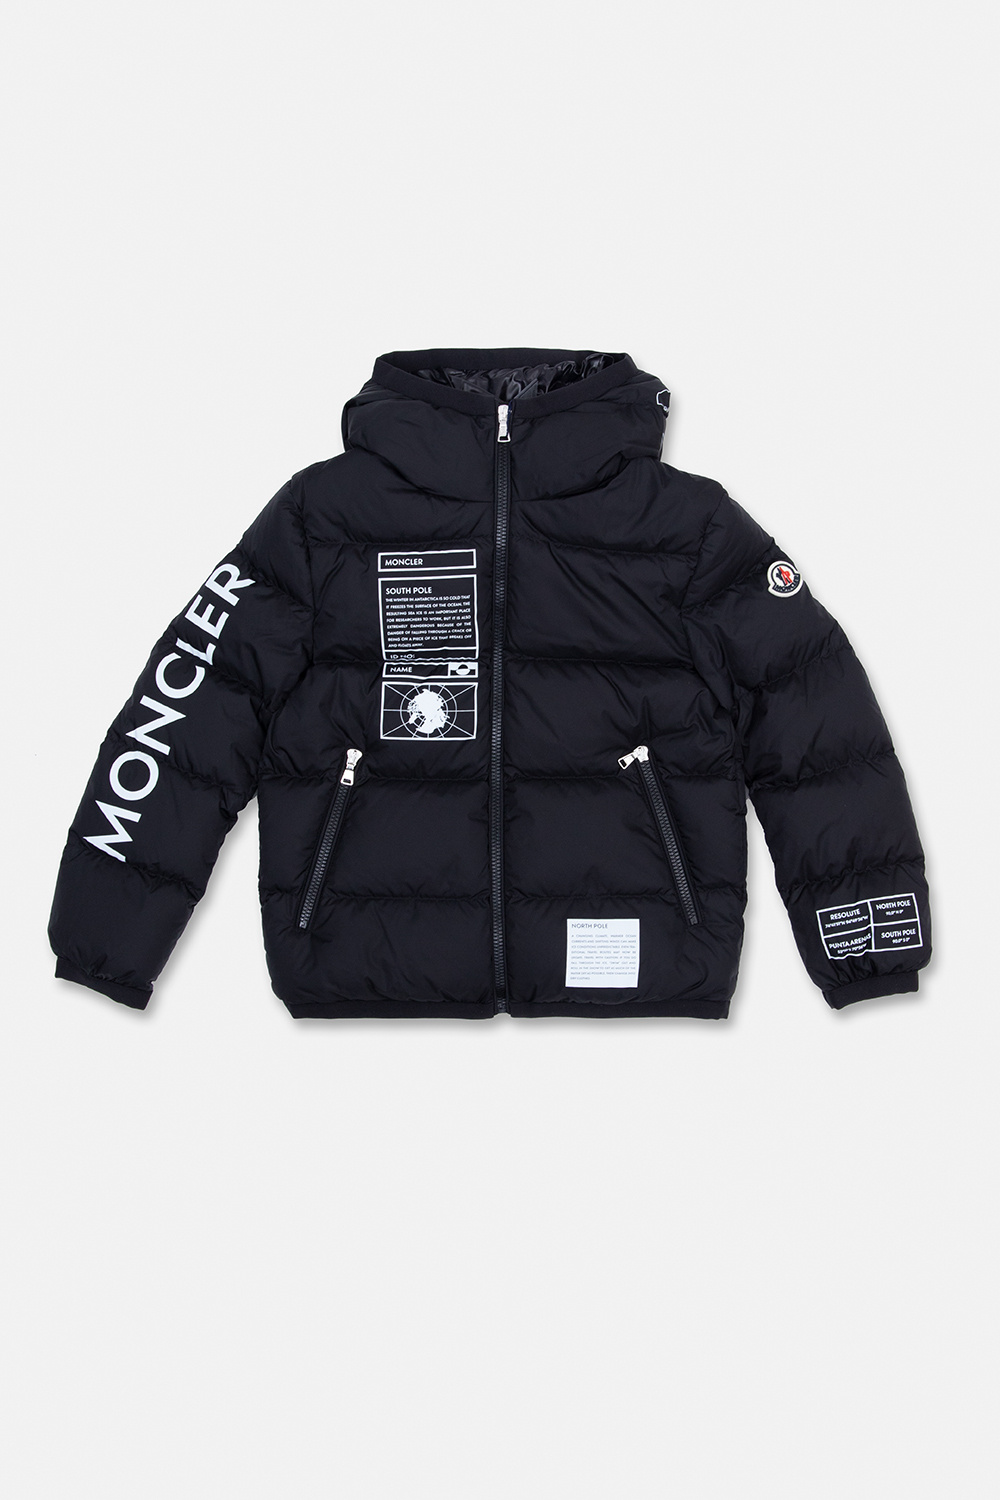 Moncler Enfant ‘Larm’ down jacket